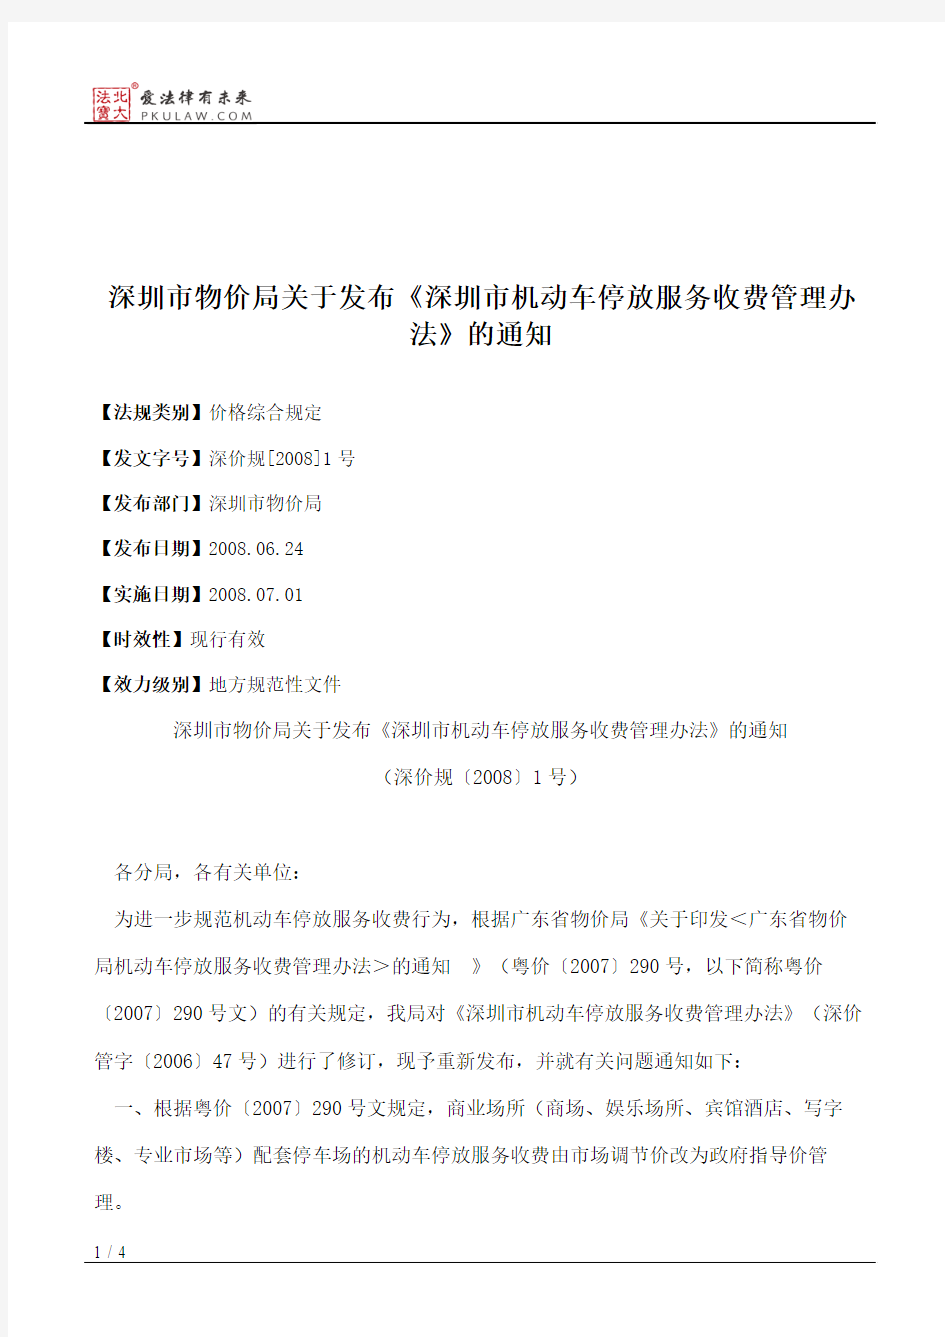 深圳市物价局关于发布《深圳市机动车停放服务收费管理办法》的通知